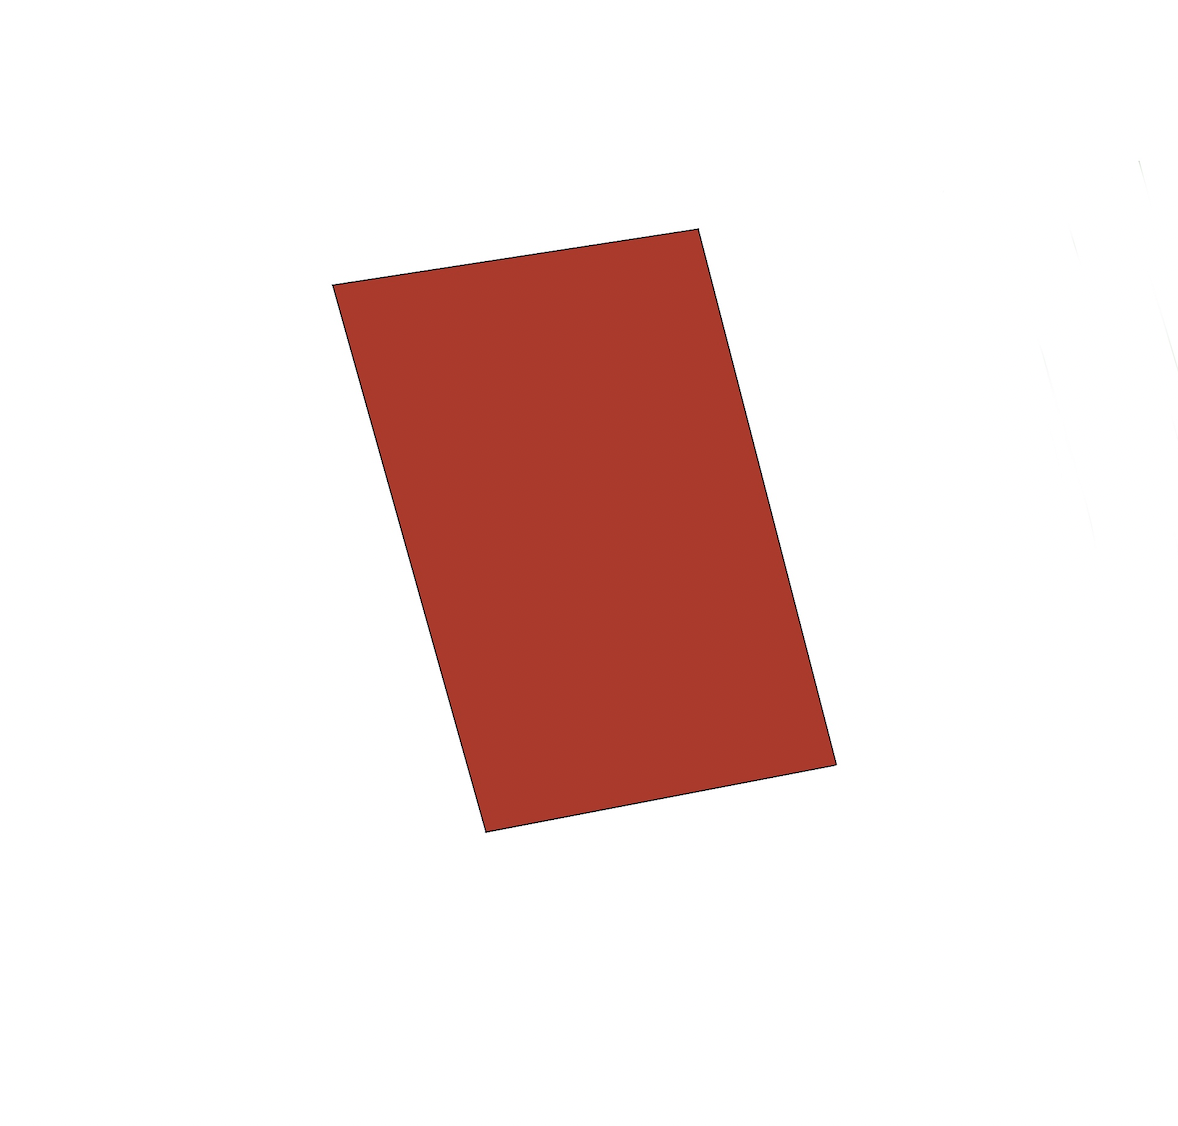 La imagen muestra una tarjeta roja